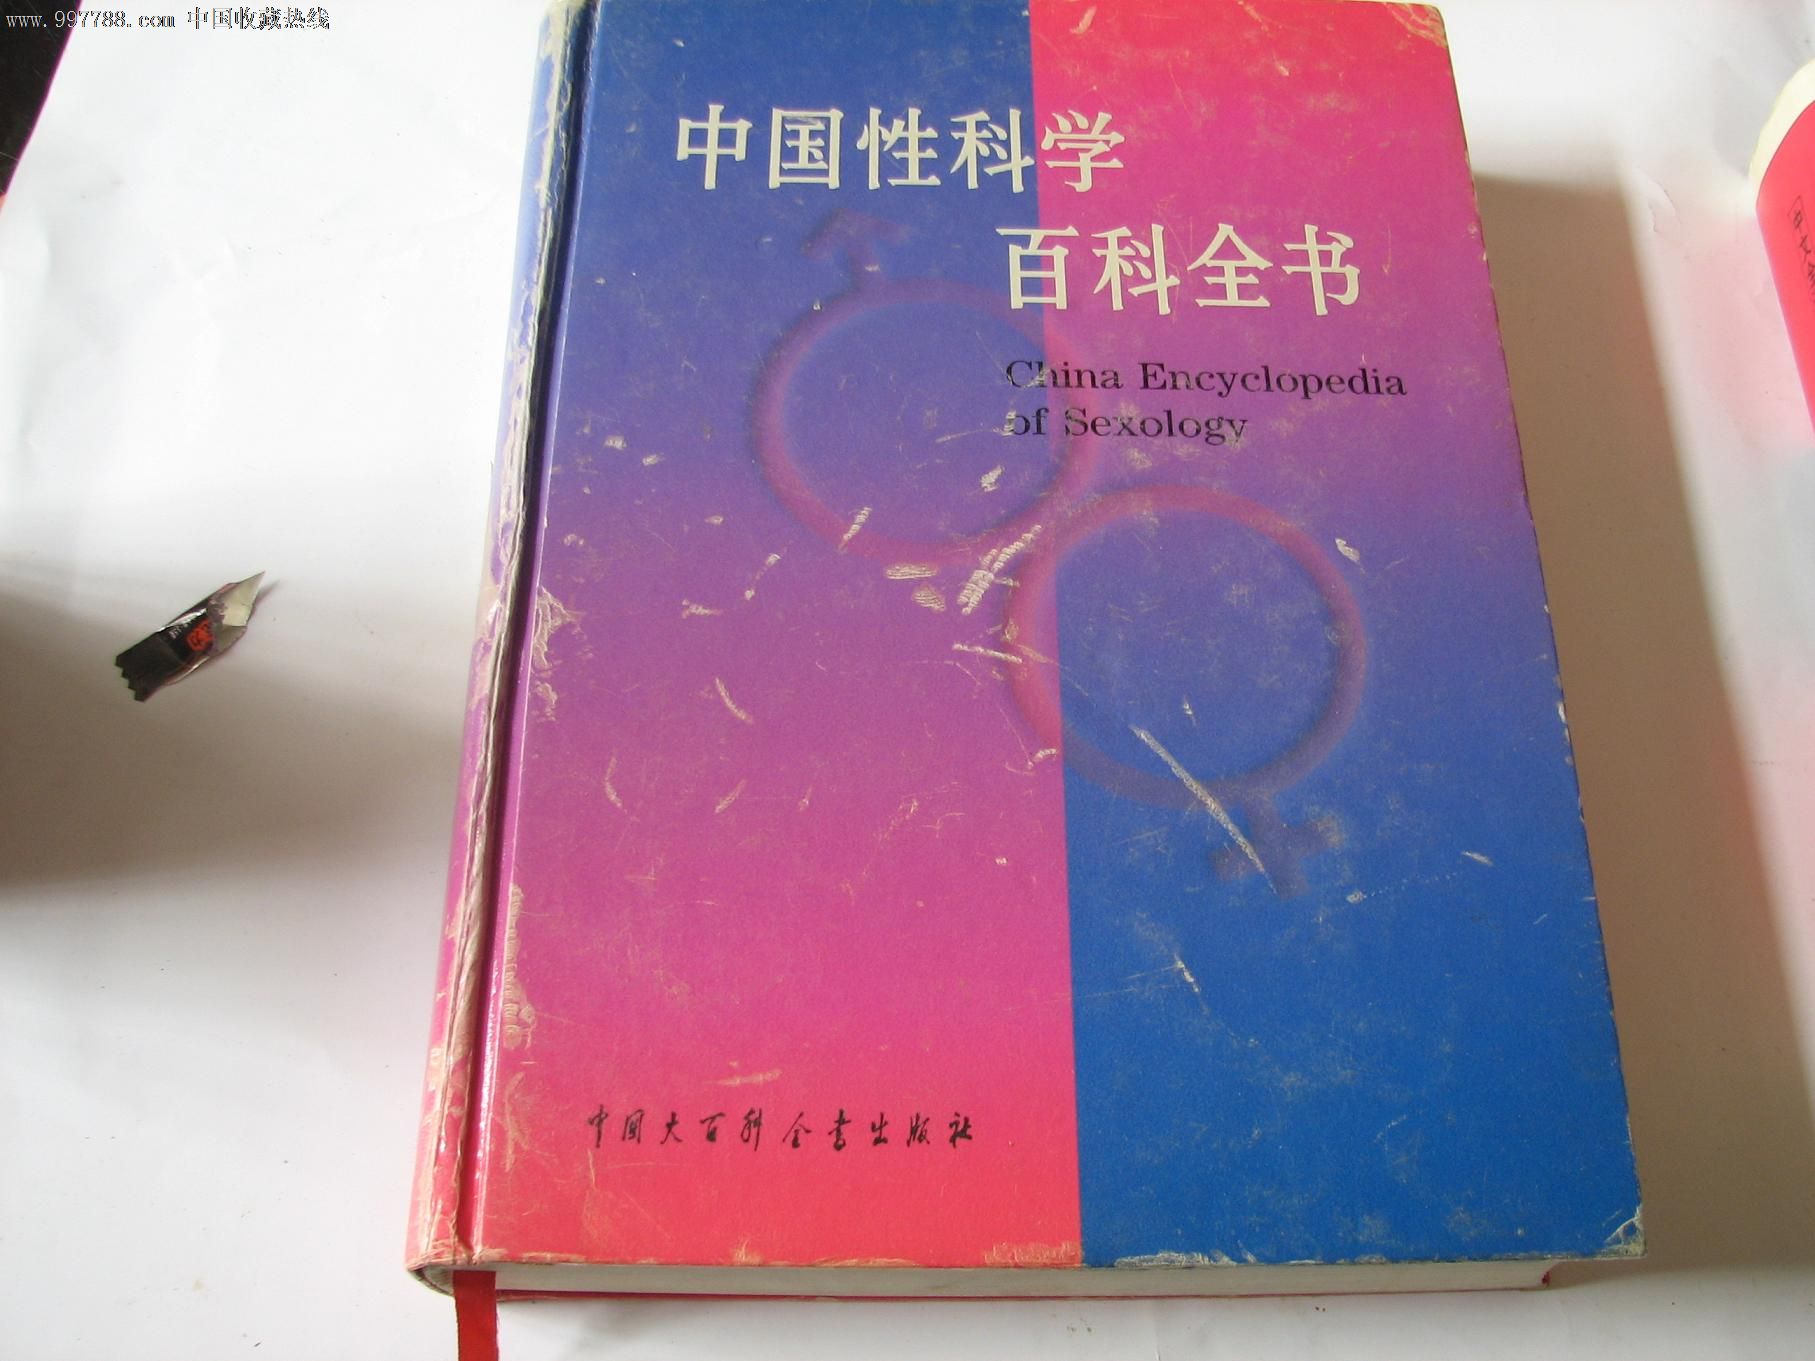 中国性科学百科全书-价格:60元-se12672960-医